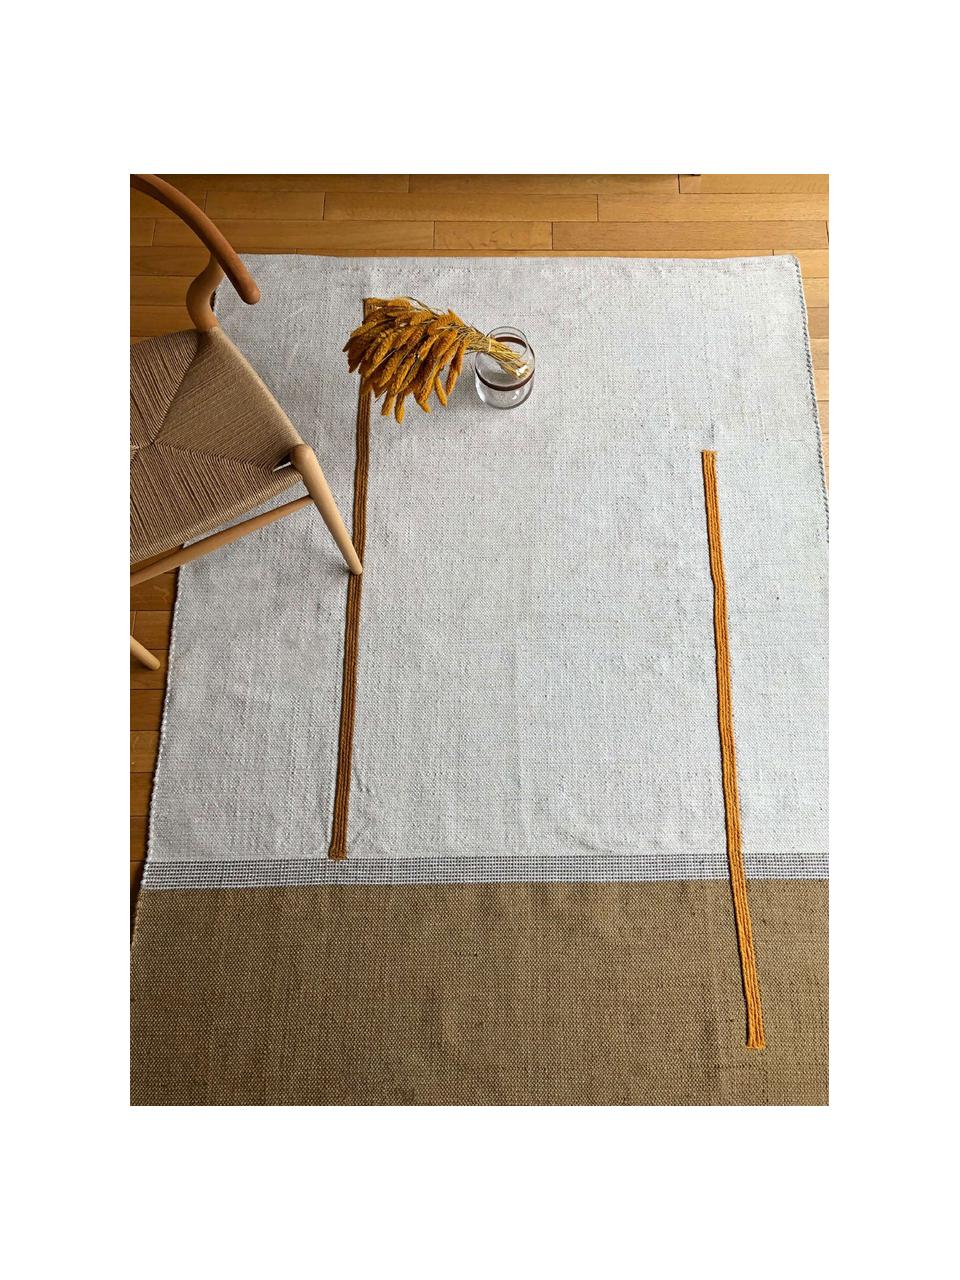 Tapis en coton tissé à la main Atlas, Coton, jute, Blanc cassé, brun, orange, larg. 110 x long. 160 cm (taille S)